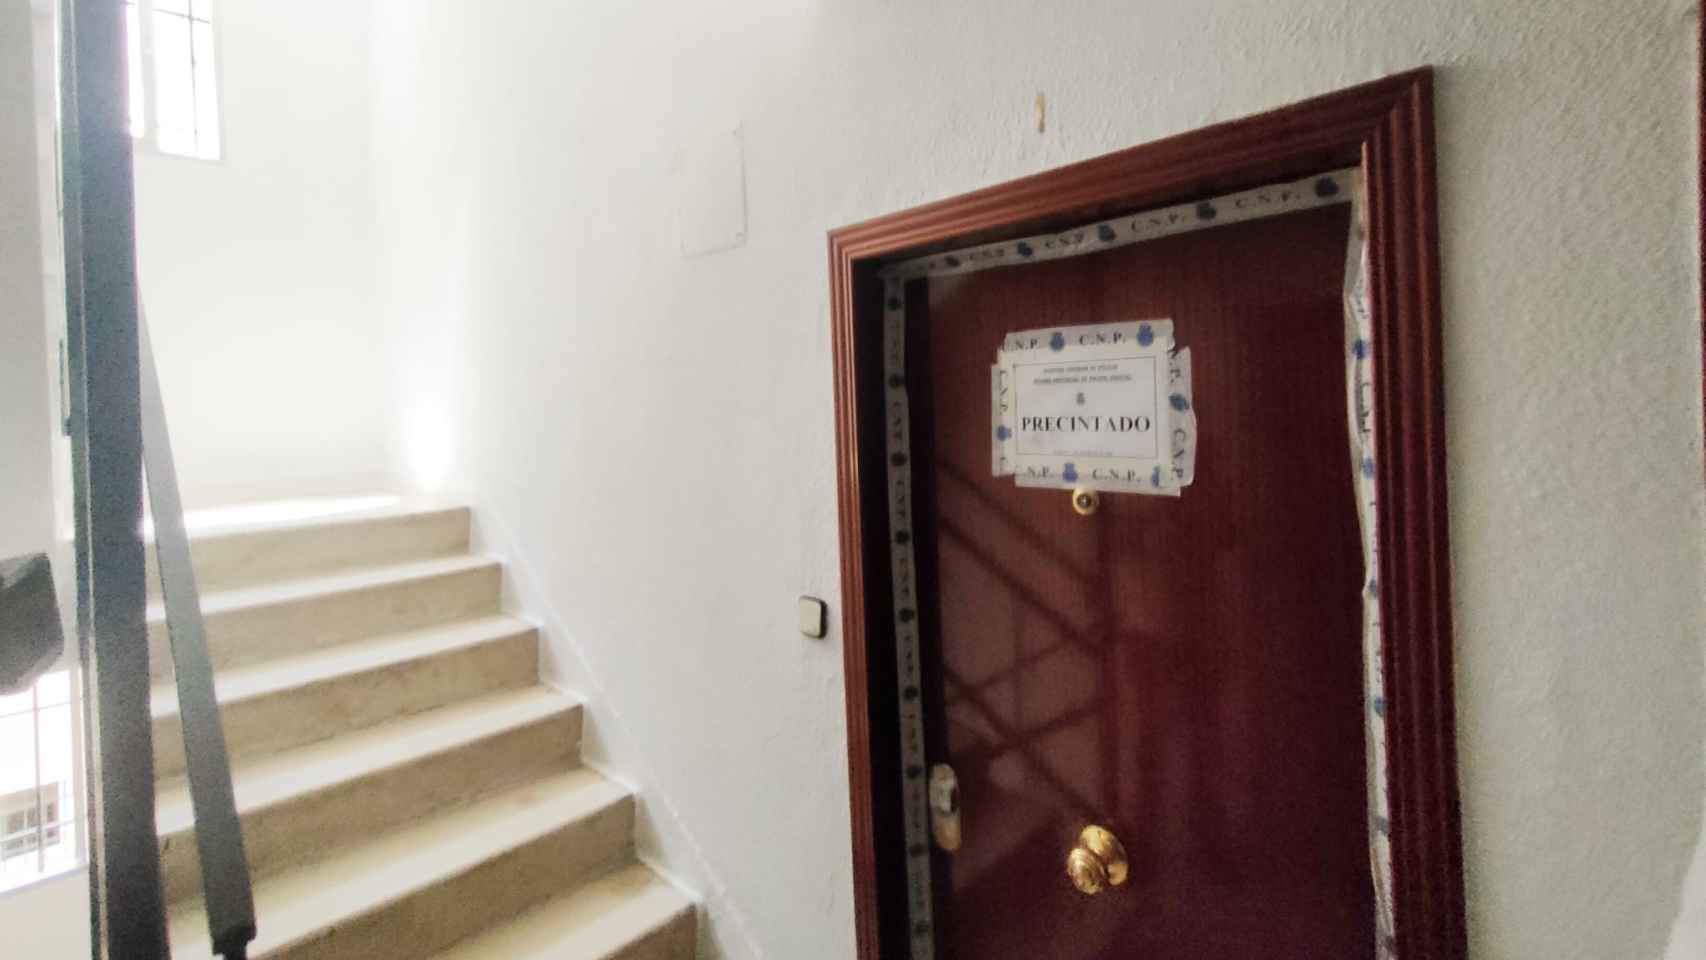 La puerta del domicilio de la víctima, precintada por la Policía Nacional.